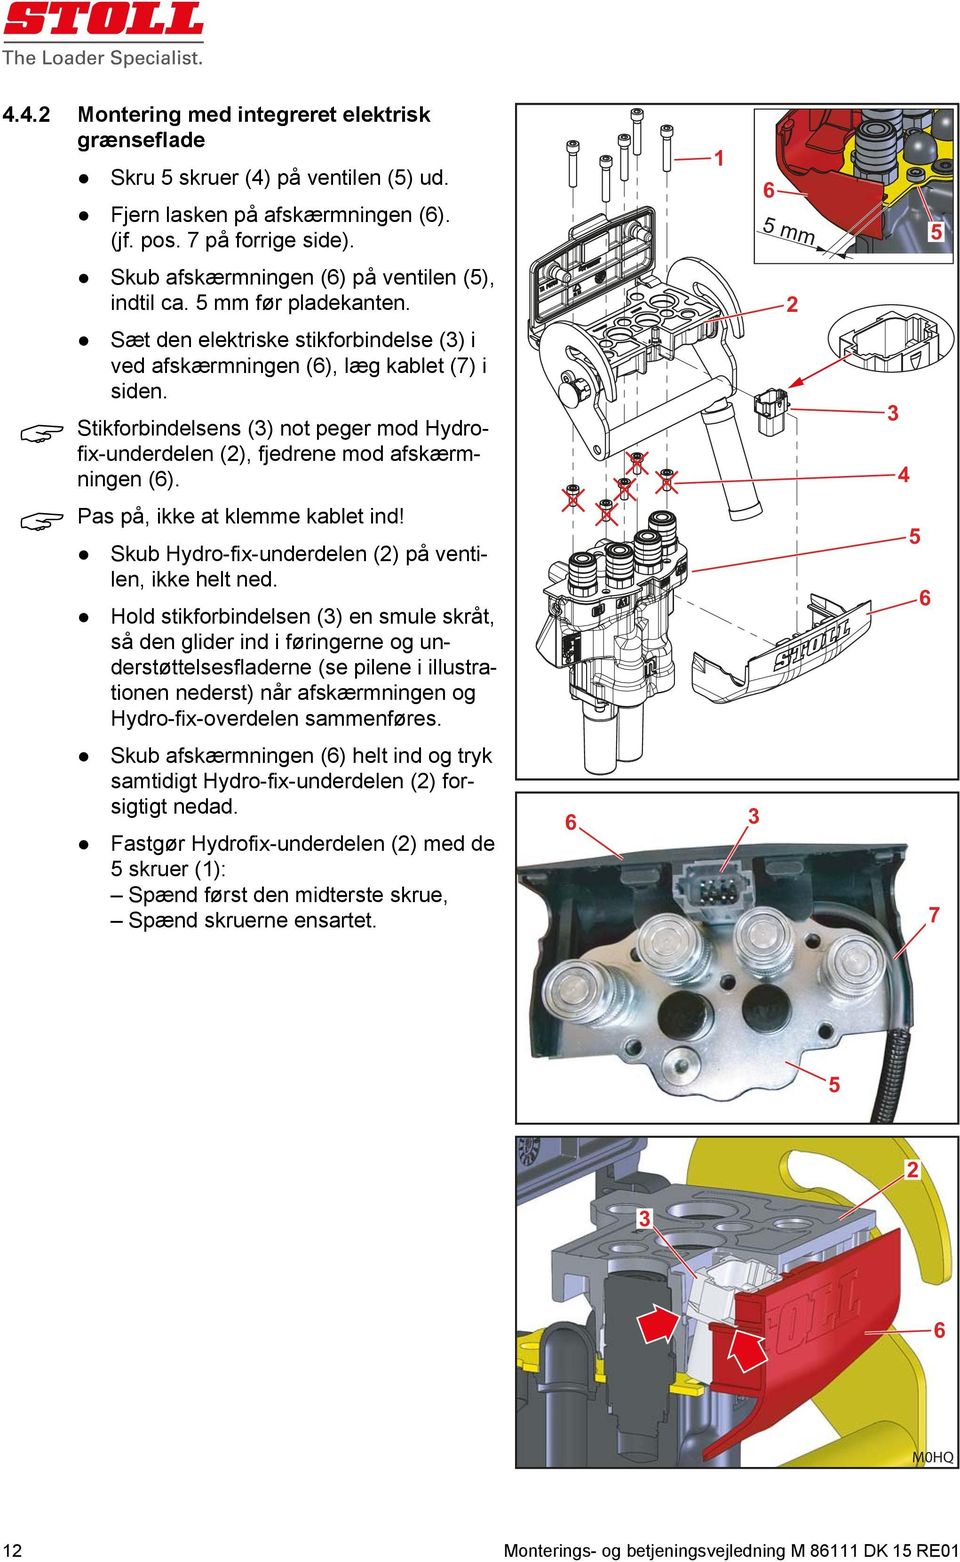 Stikforbindelsens () not peger mod Hydrofix-underdelen (), fjedrene mod afskærmningen (6). Pas på, ikke at klemme kablet ind! Skub Hydro-fix-underdelen () på ventilen, ikke helt ned.